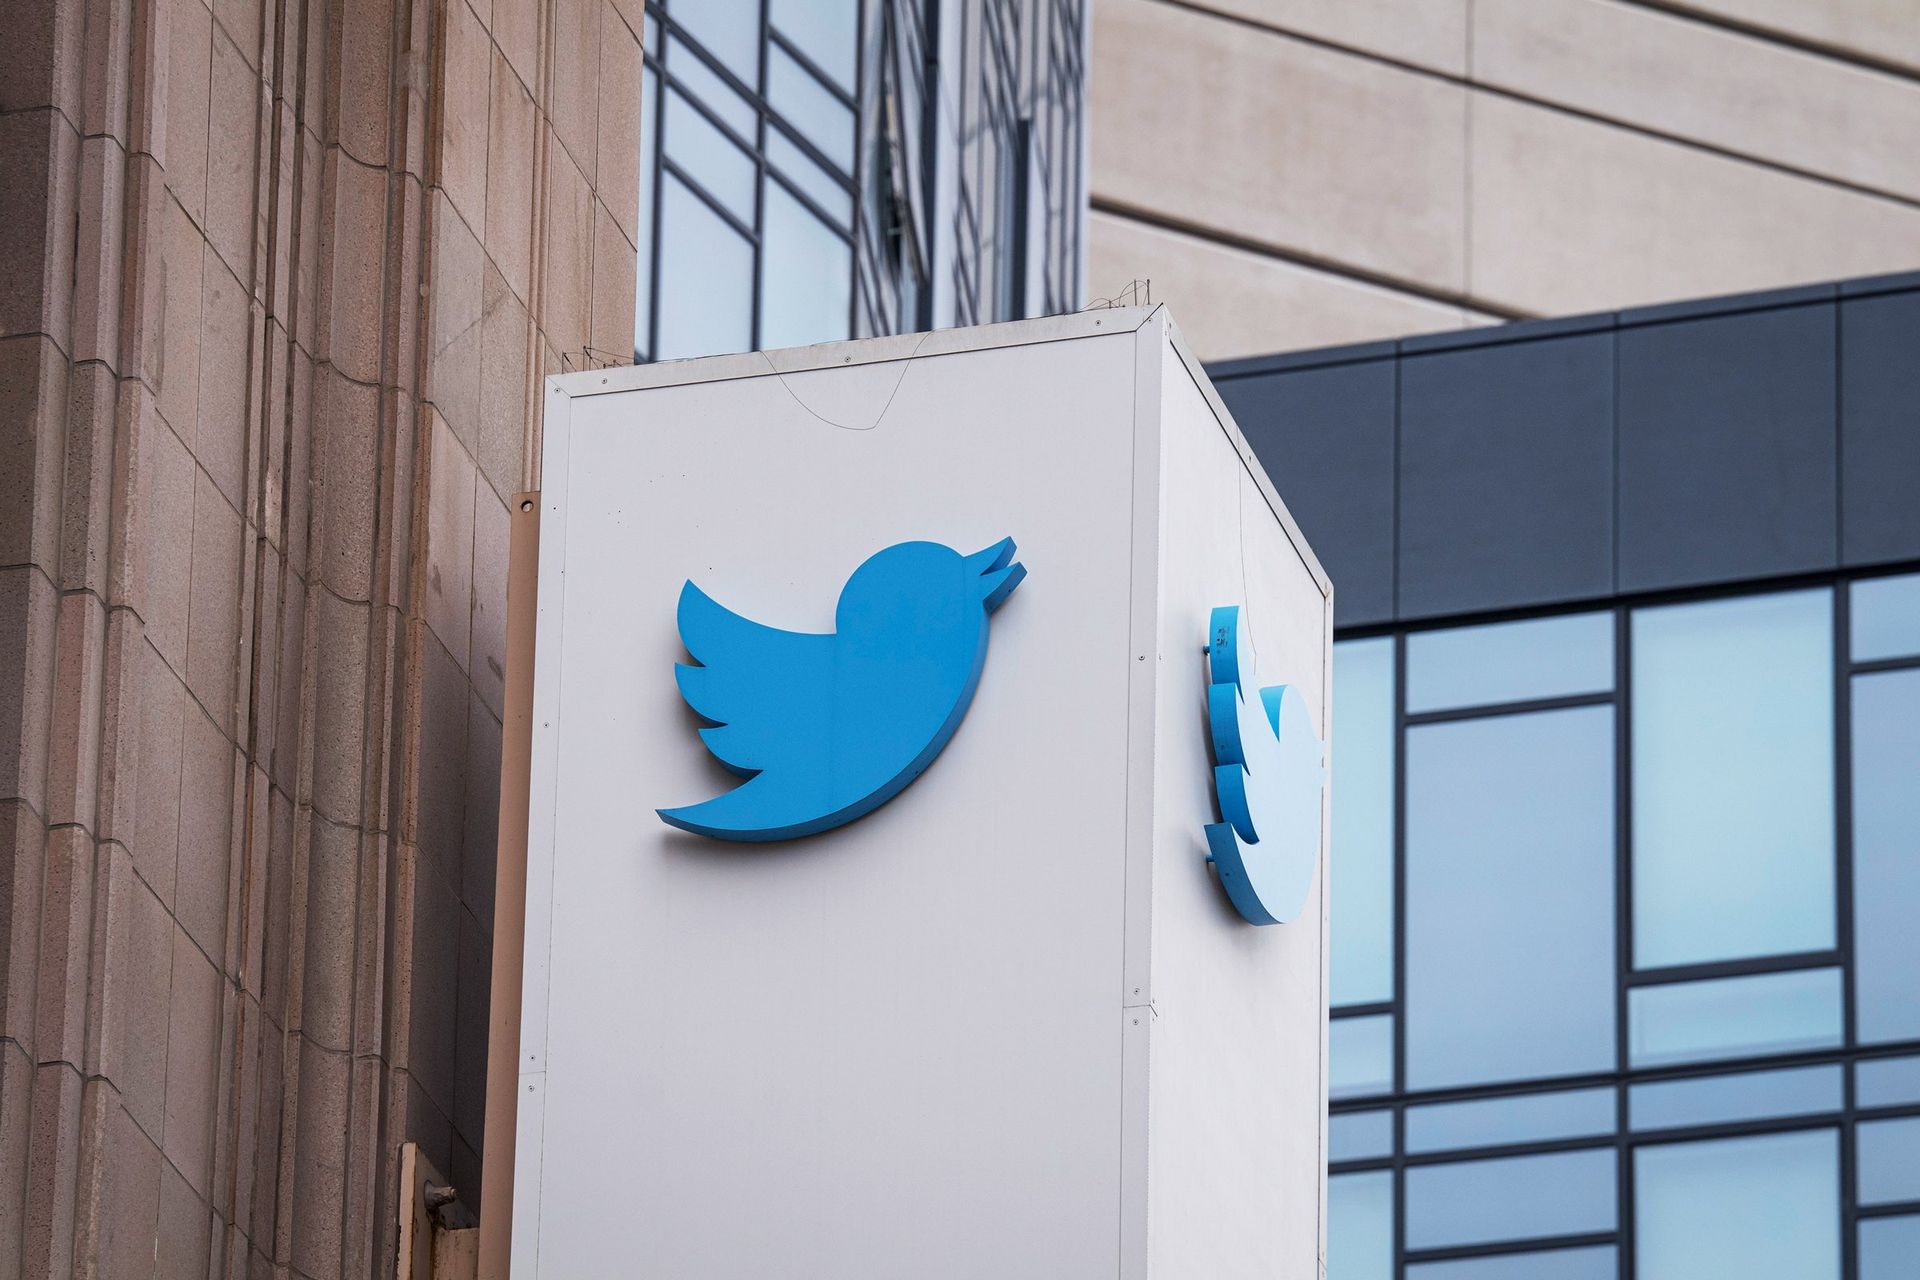 Битва за трон в Твиттере: генеральный директор увольняет двух руководителей и прекращает прием на работу